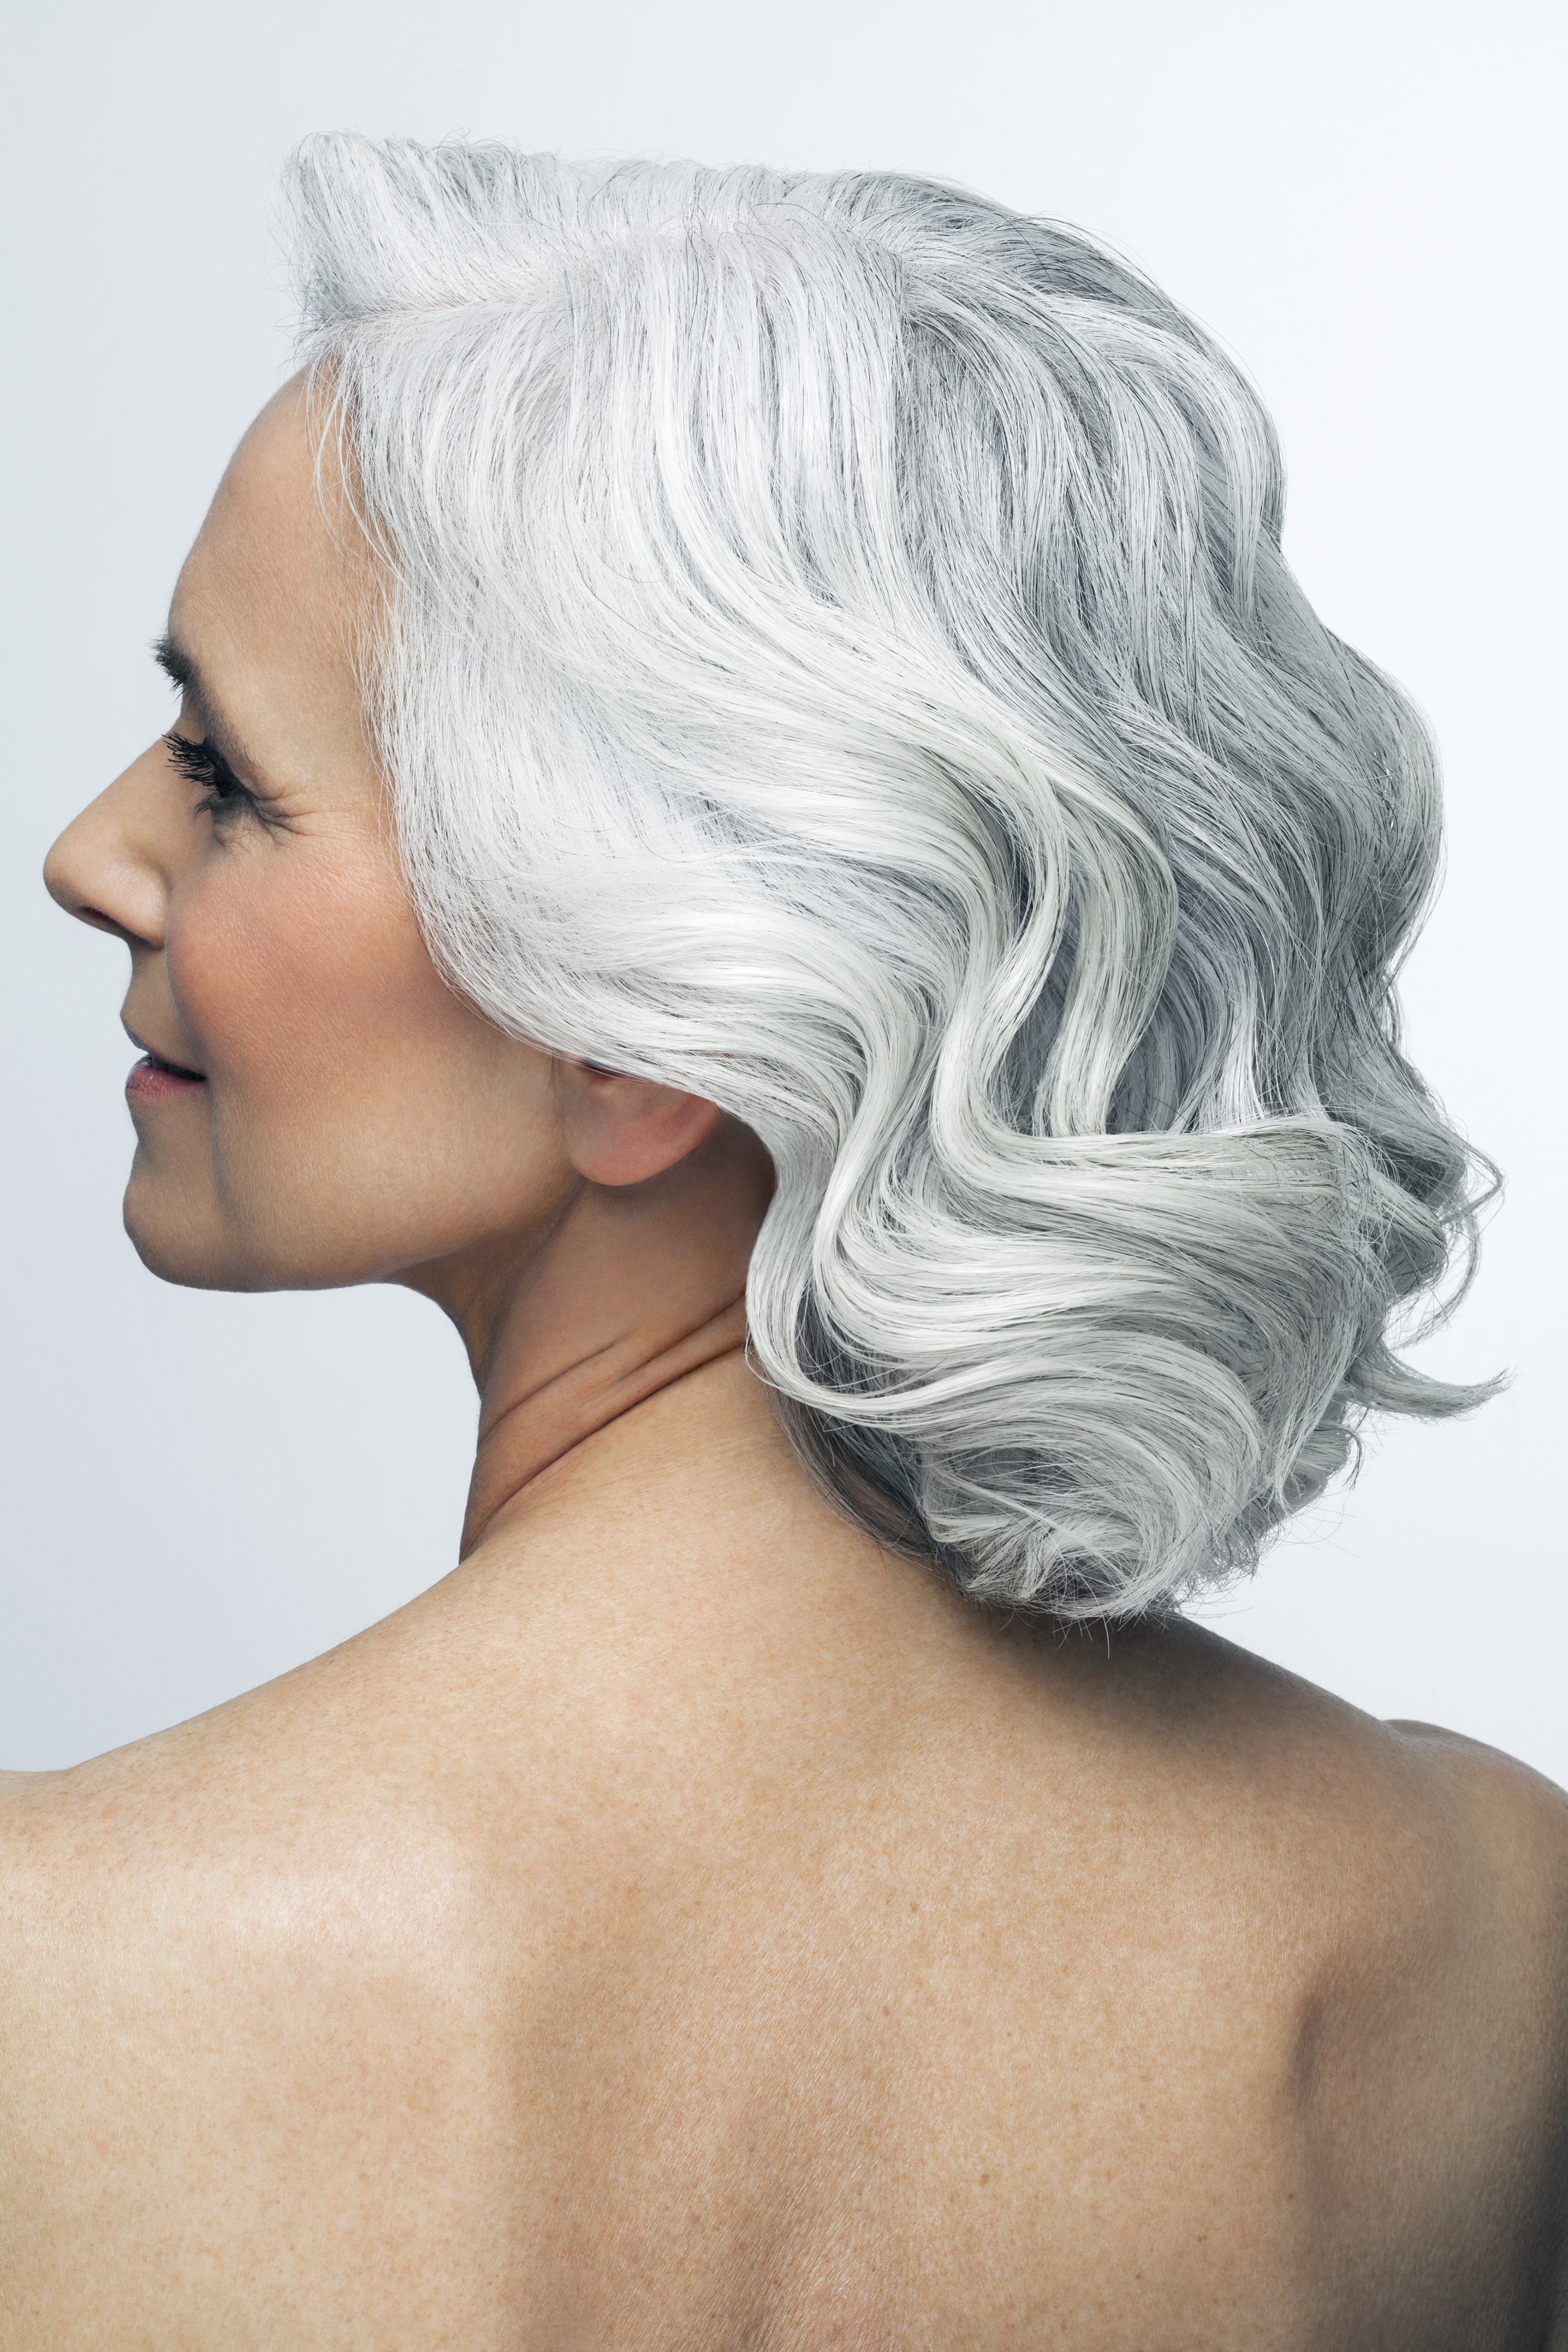 Une femme avec une vieille coupe de cheveux hollywoodienne | Source : Getty Images